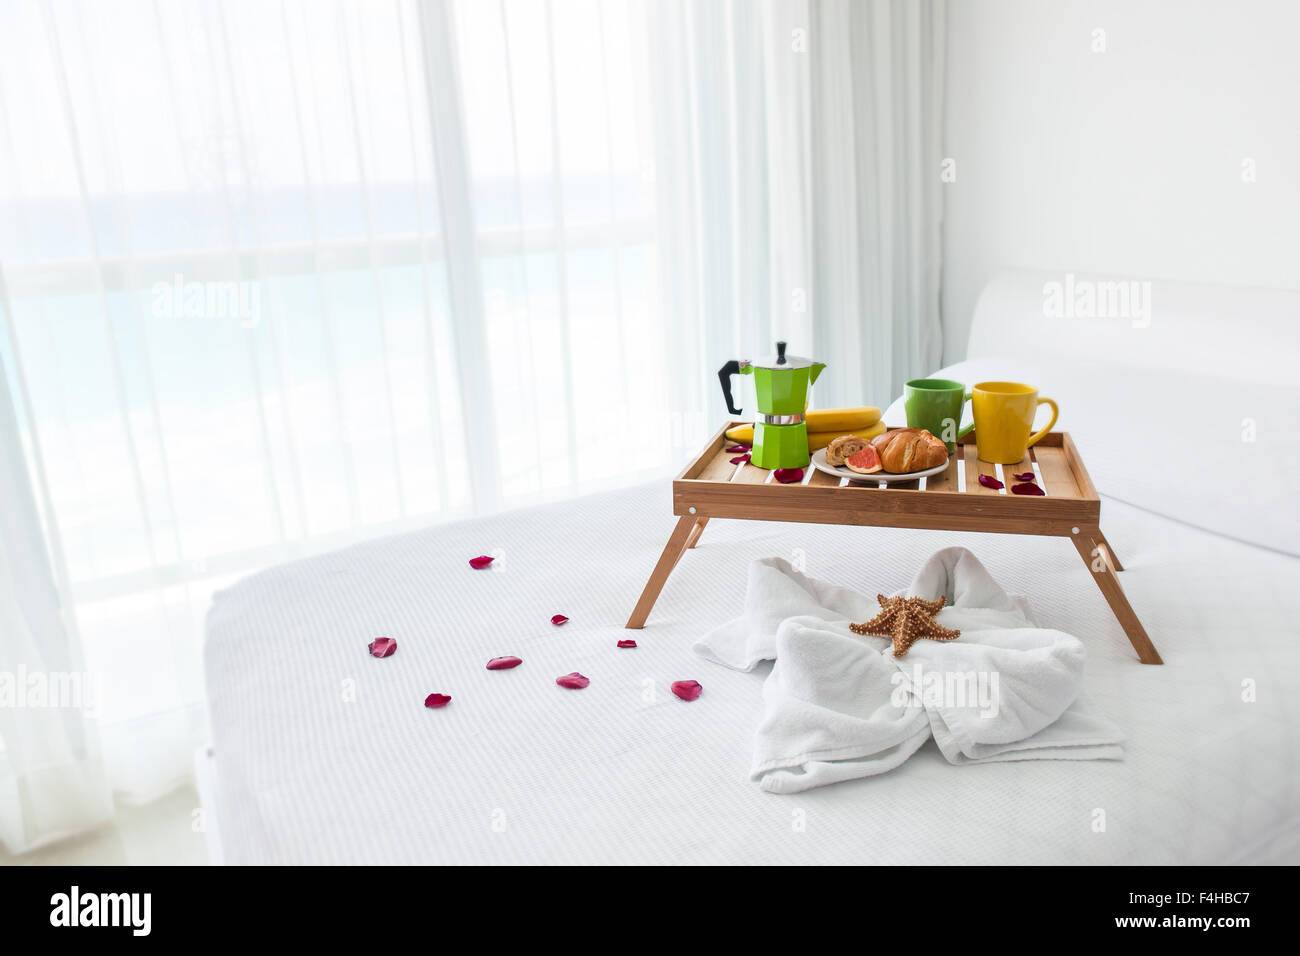 Colazione vassoio in legno con caffettiera e croissant sul letto, decorate starfish su asciugamano bianco Foto Stock